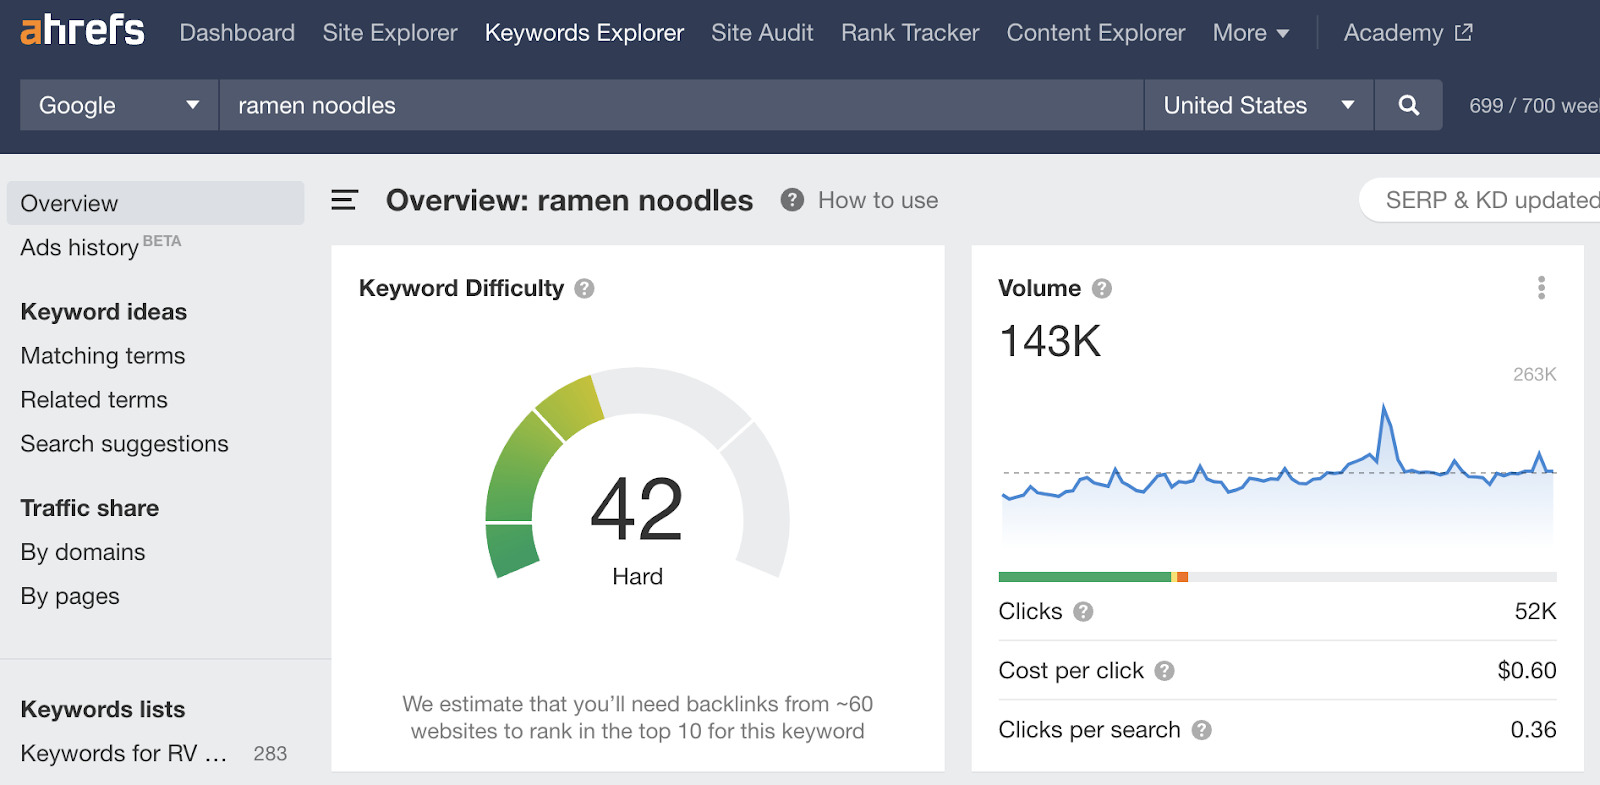 Keywords Explorer overview for "ramen noodles"